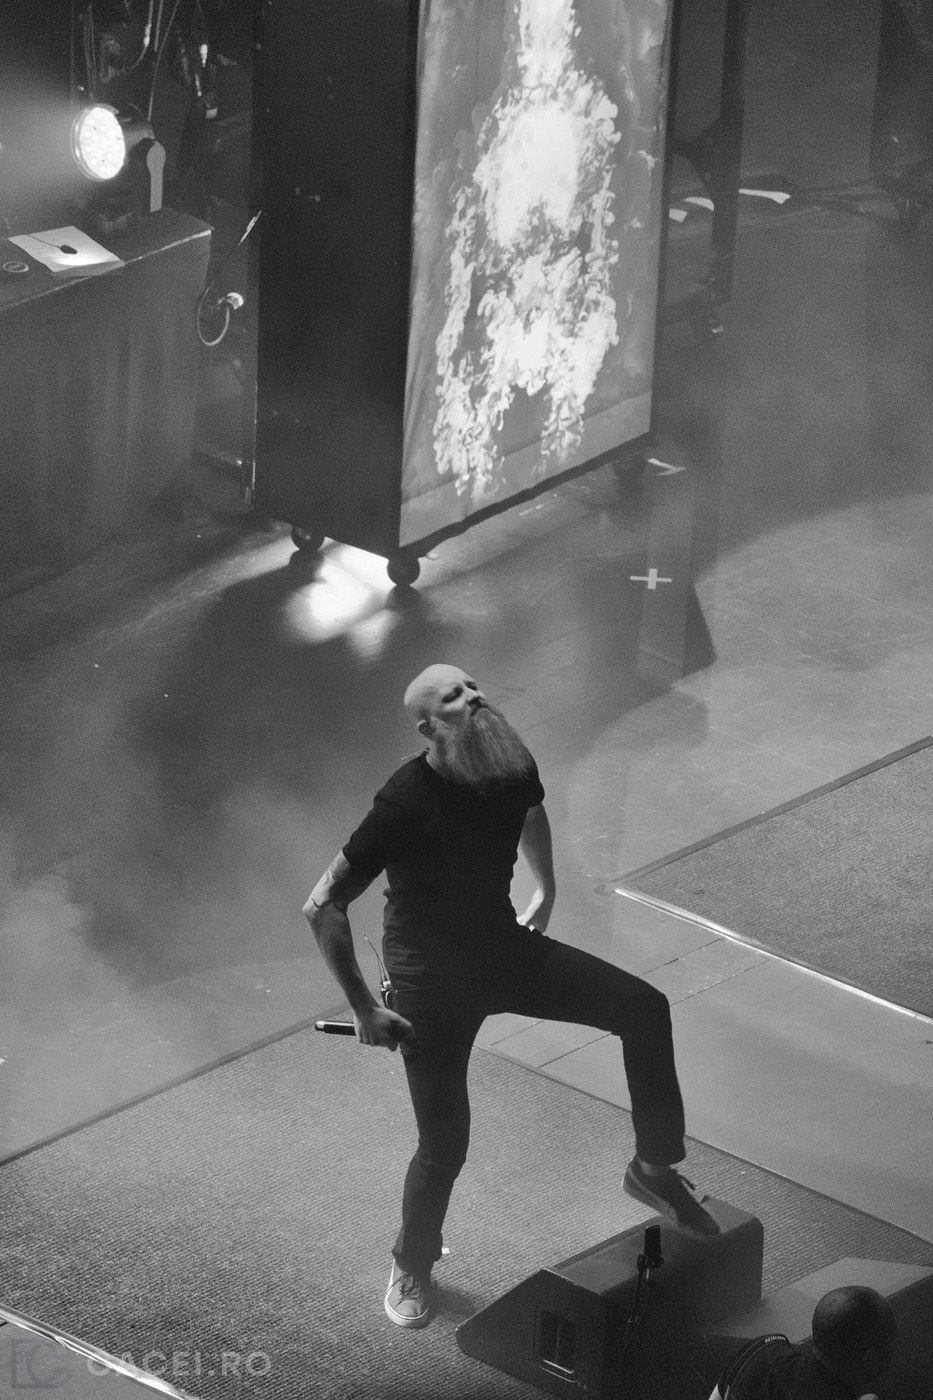 Meshuggah at The Royal Albert Hall